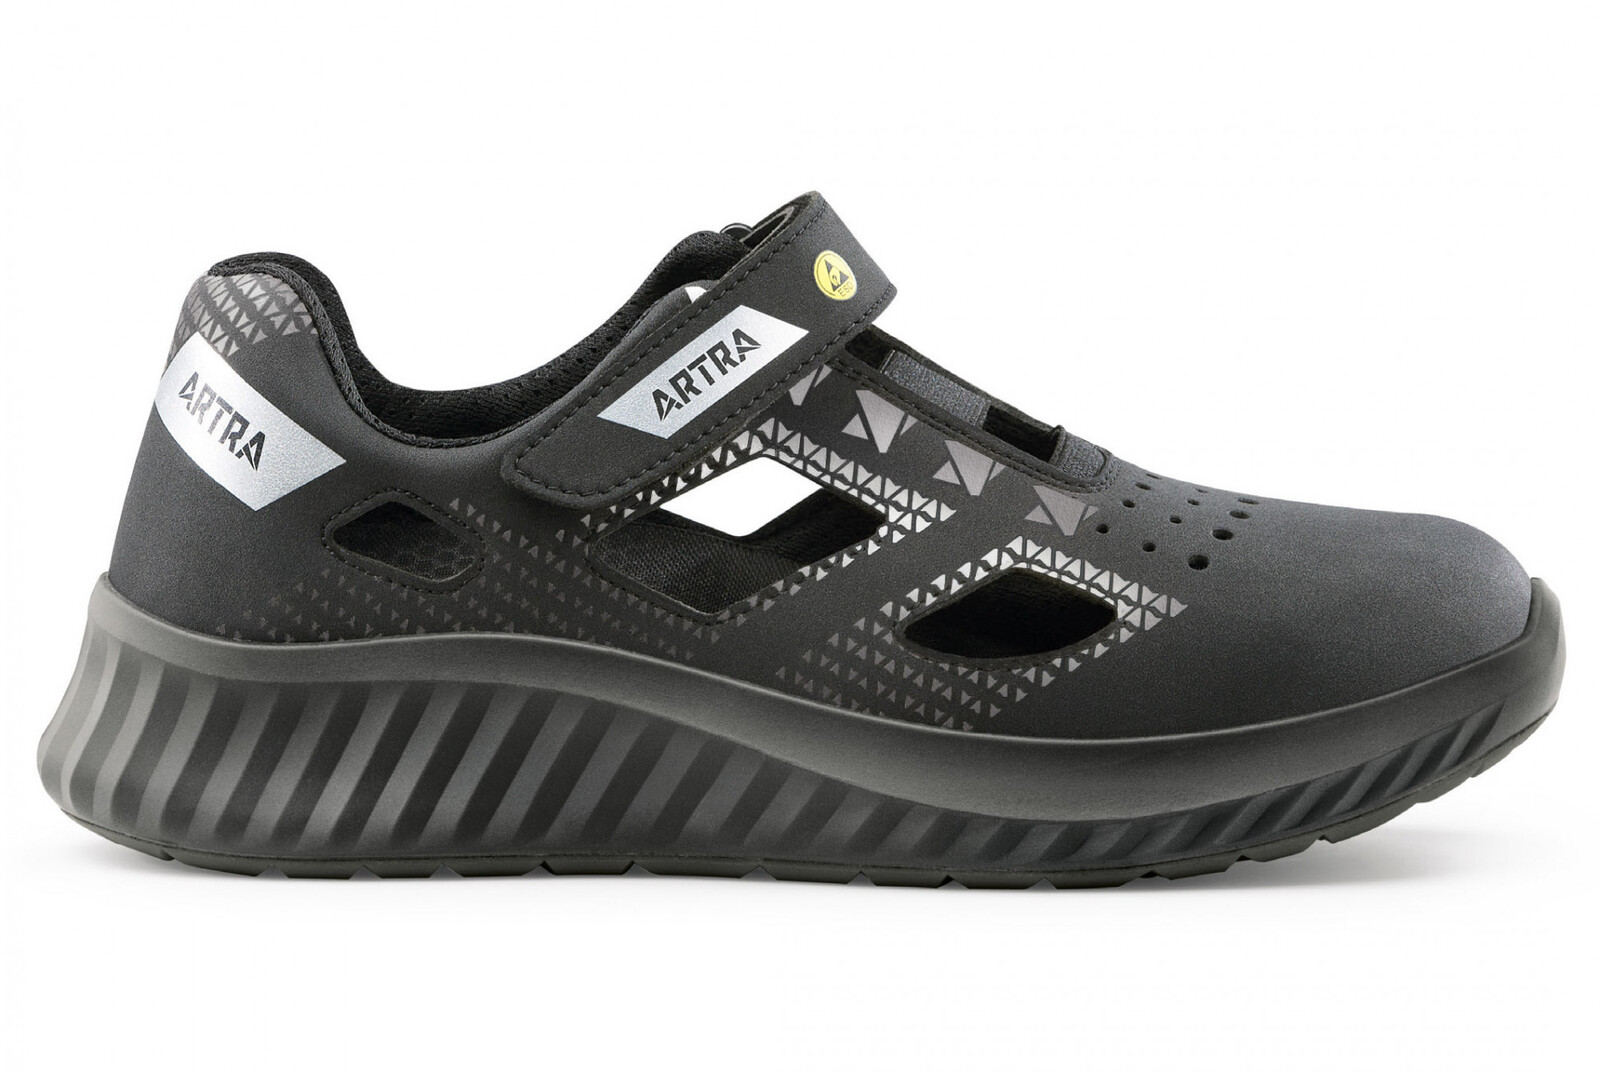 Bezpečnostné sandále Artra Arso 701 616560 S1 SRC ESD - veľkosť: 39, farba: čierna/sivá